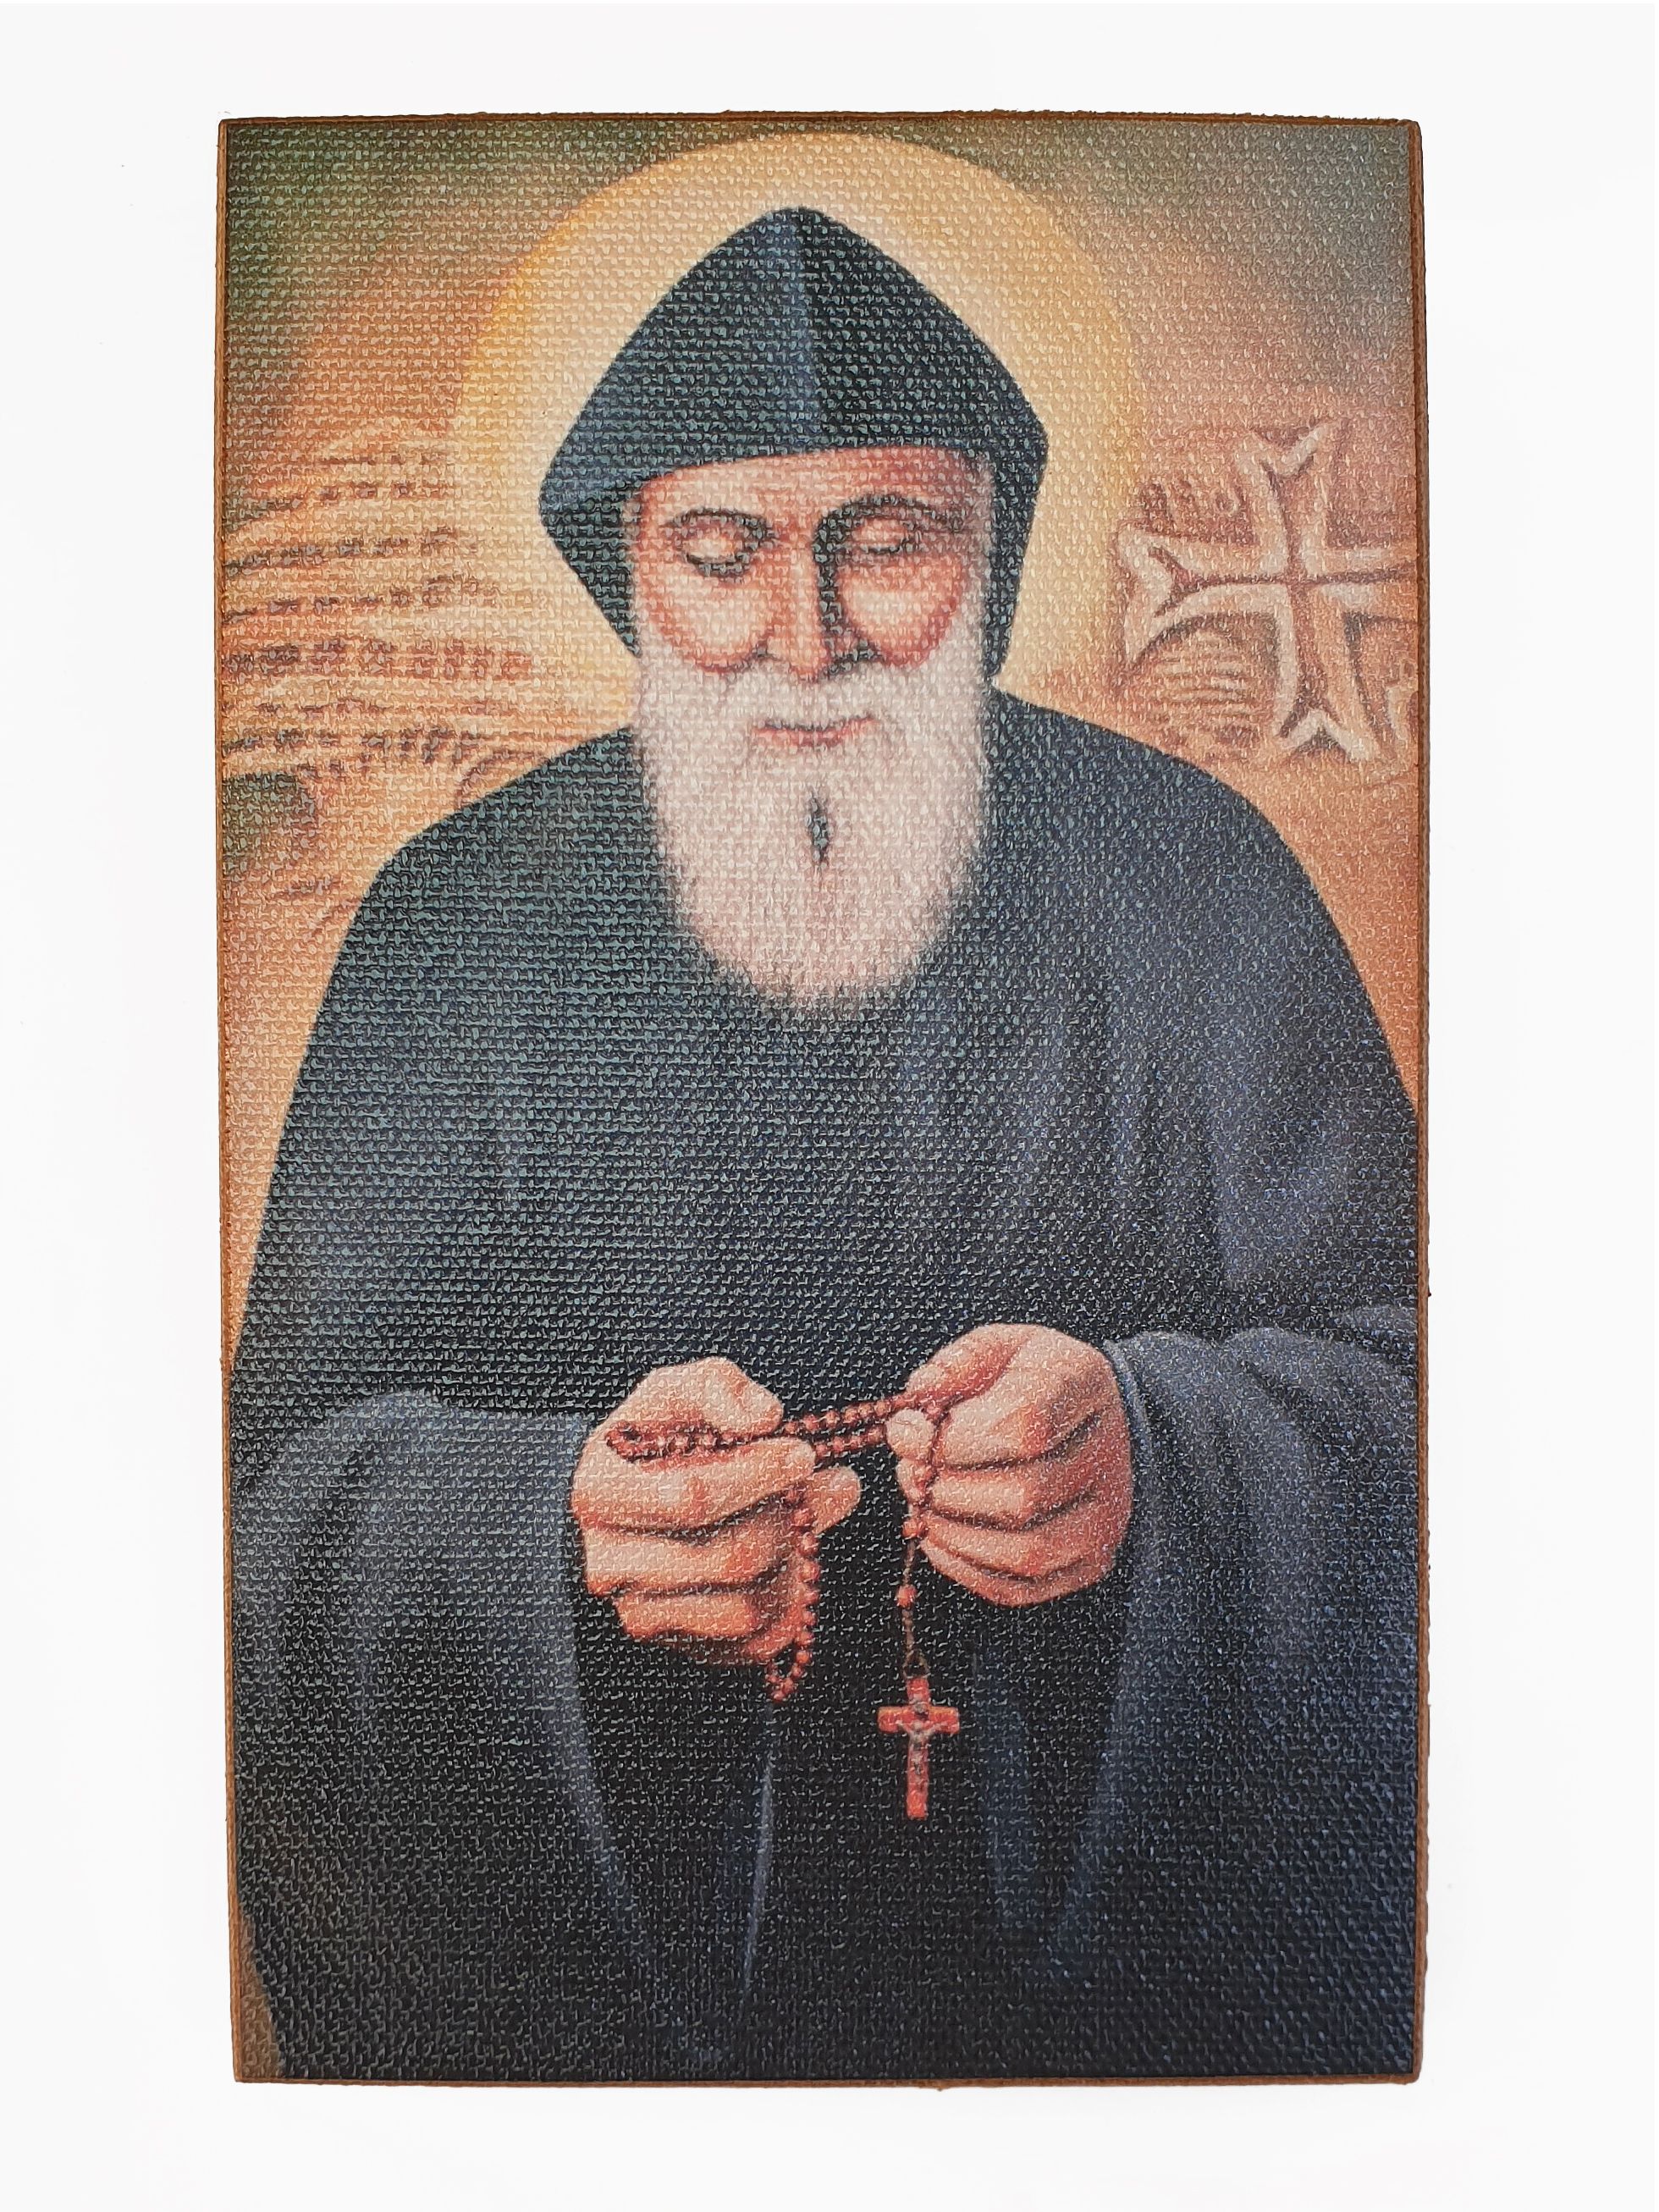 Шарбель святой фото исцеляющее изображение